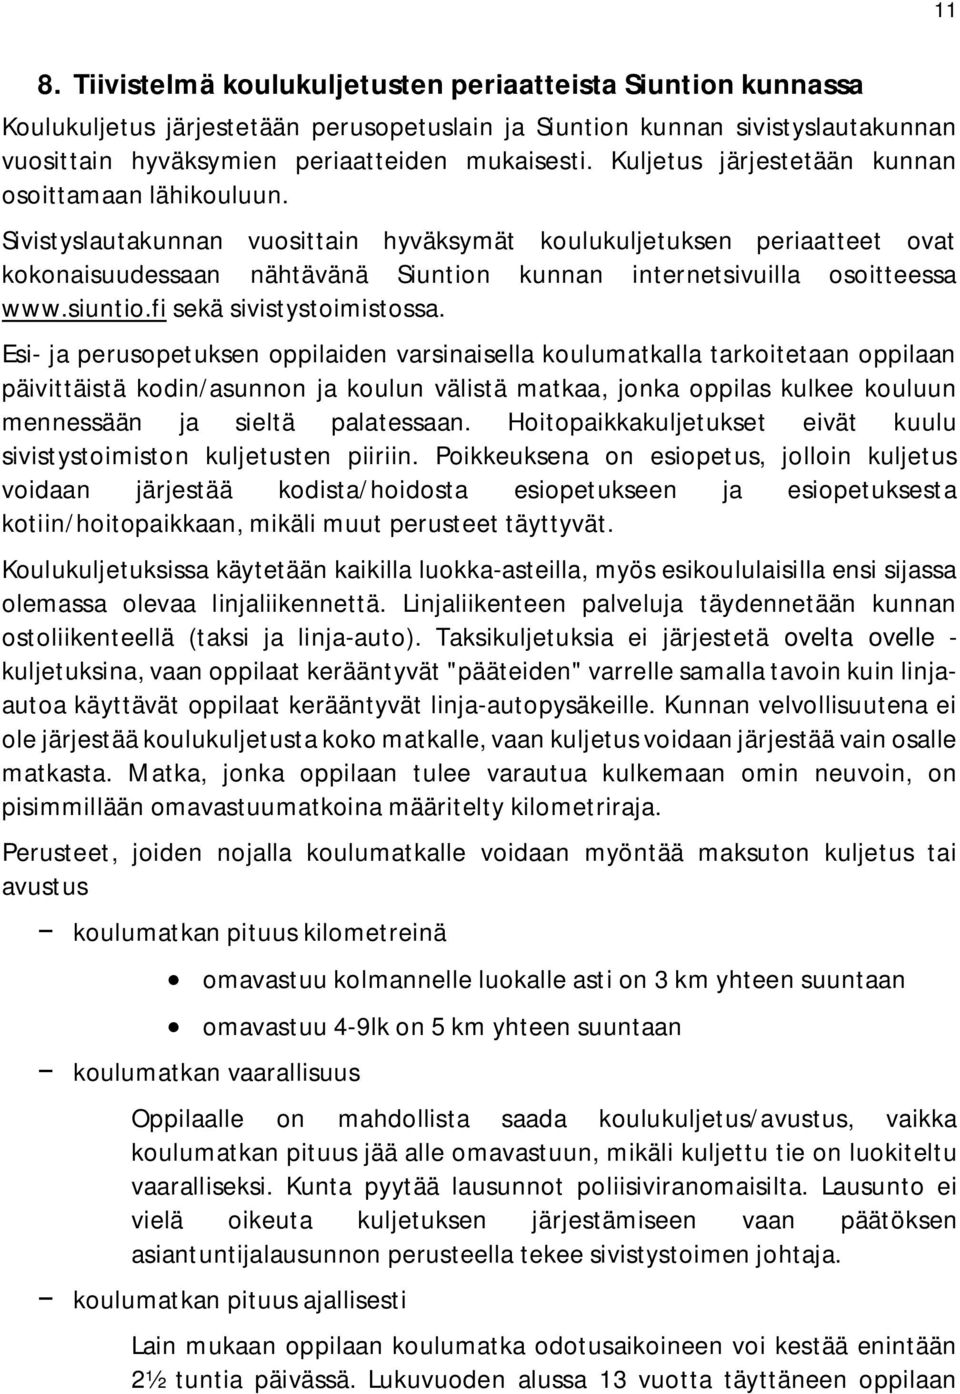 Sivistyslautakunnan vuosittain hyväksymät koulukuljetuksen periaatteet ovat kokonaisuudessaan nähtävänä Siuntion kunnan internetsivuilla osoitteessa www.siuntio.fi sekä sivistystoimistossa.